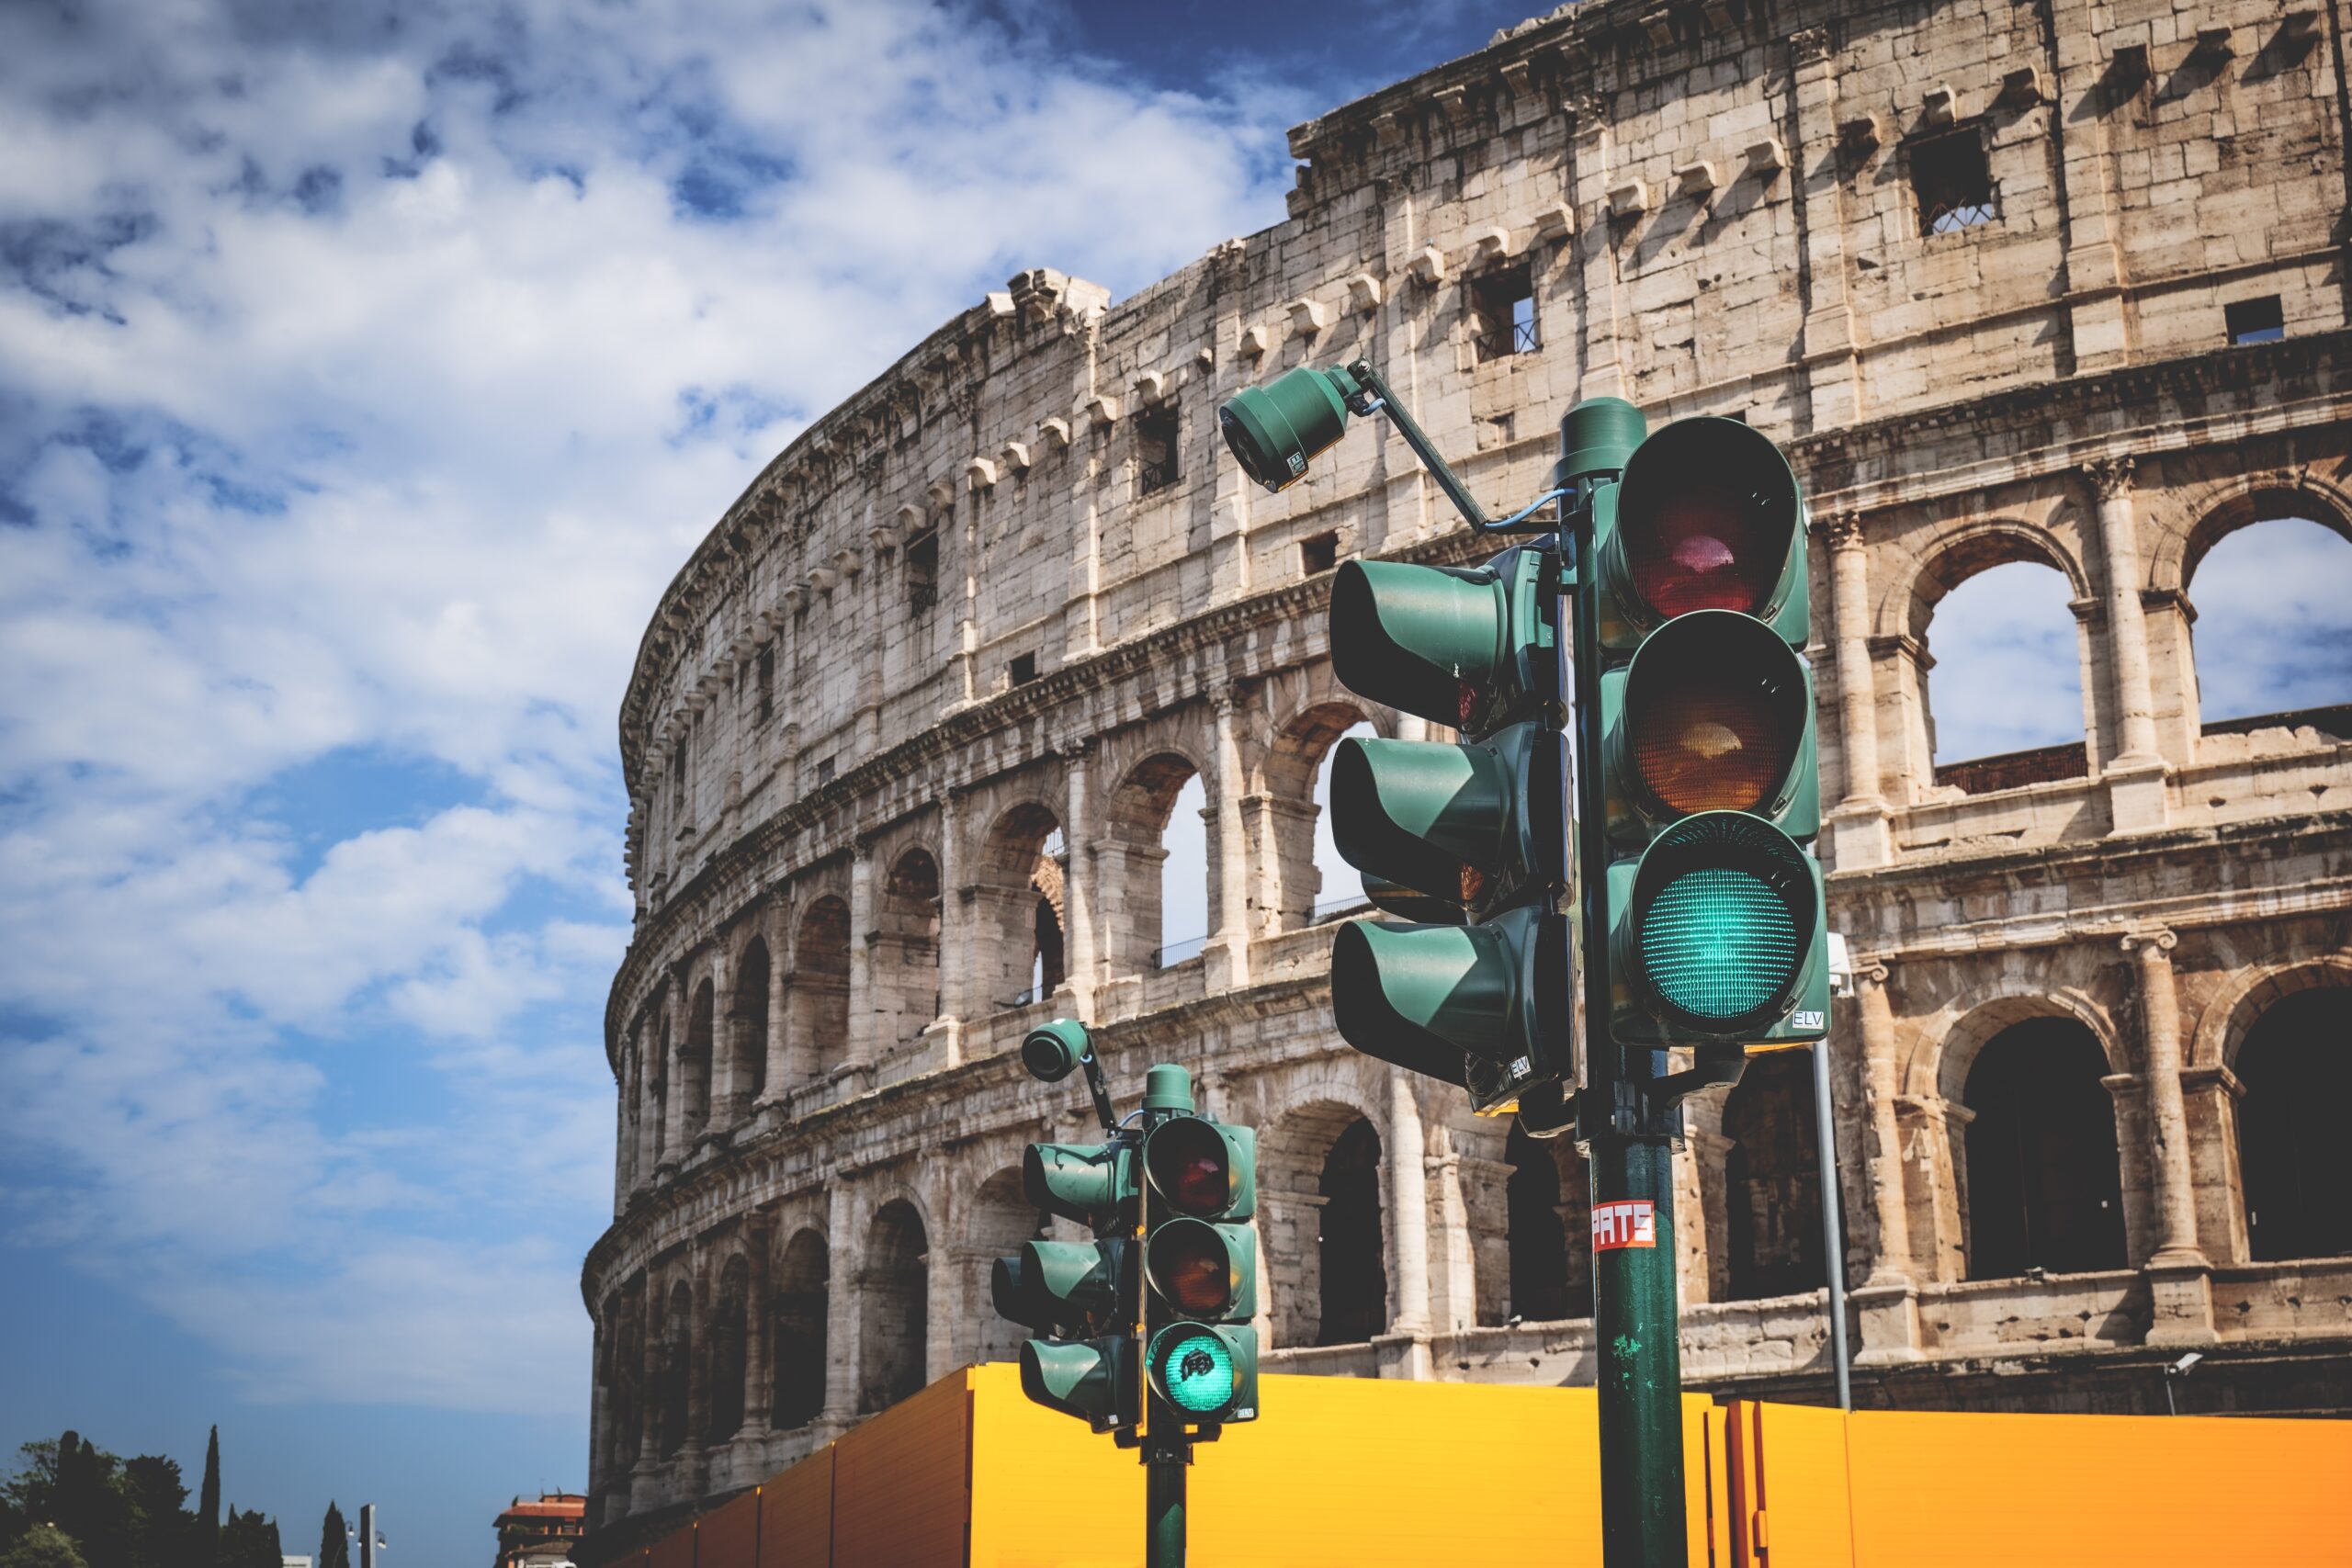 Go Rome City Tour - Colosseum Tour